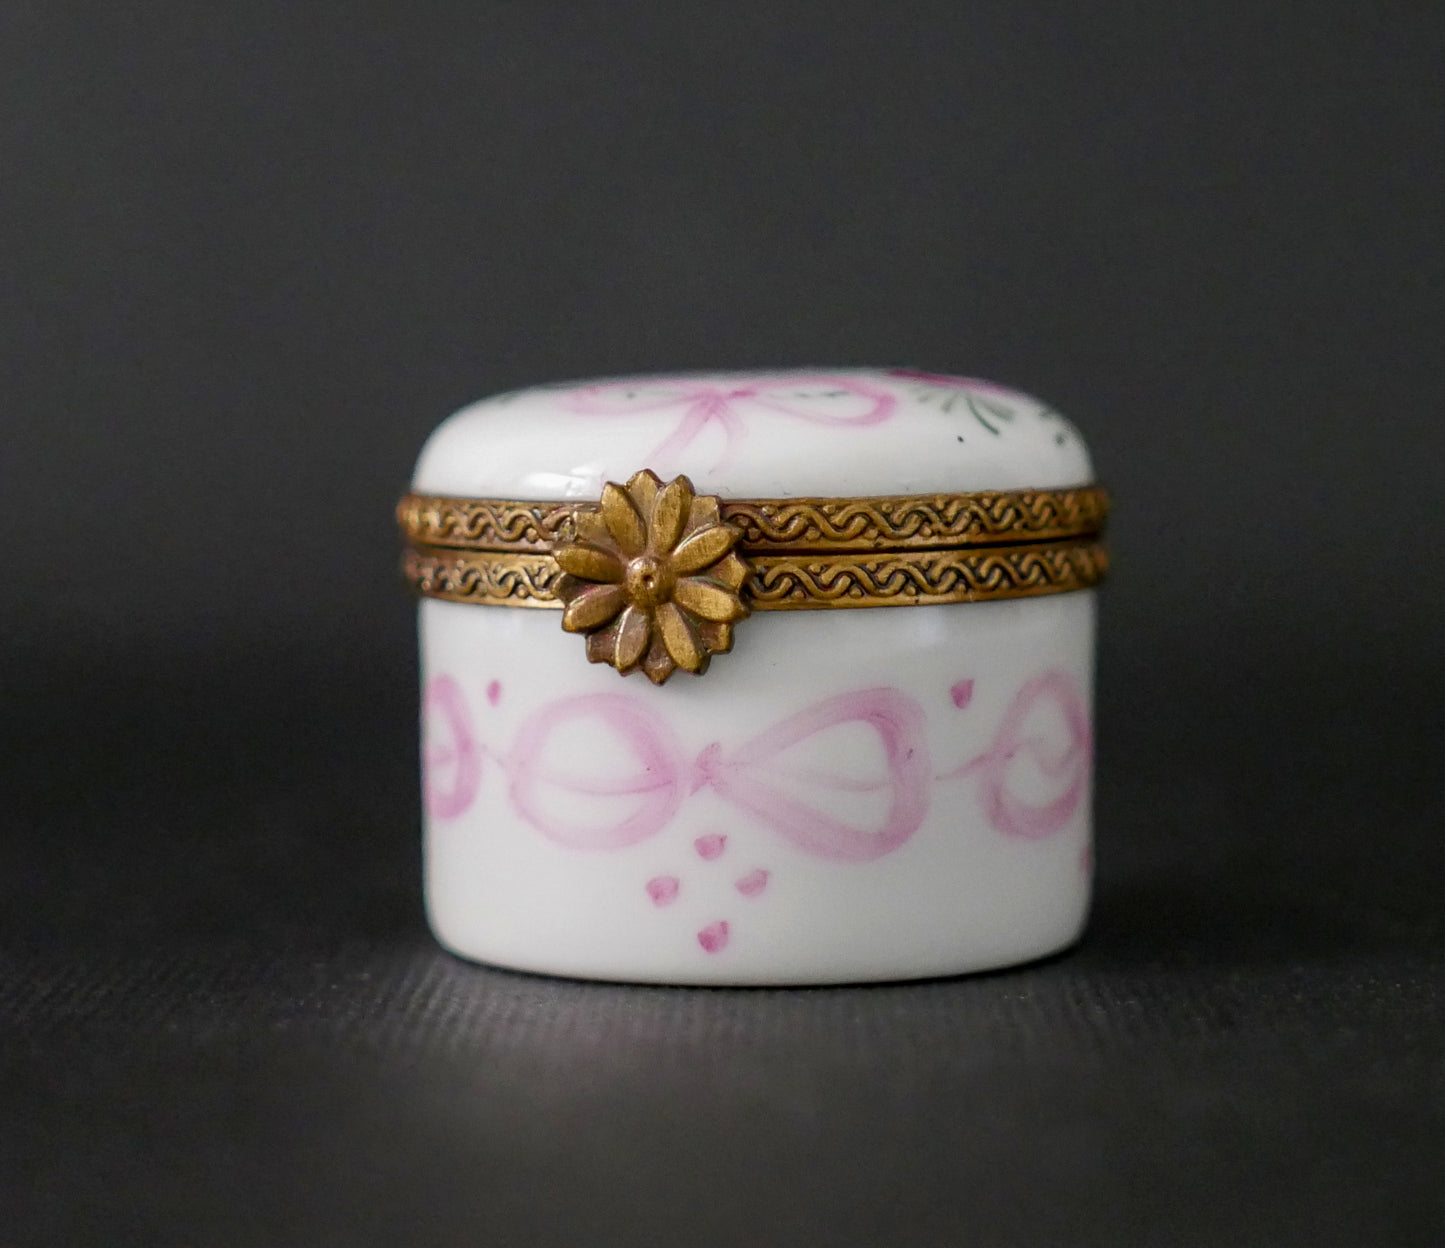 Limoges Porcelain Trinket Box | Miniature France Handmade Vintage Box - Signed